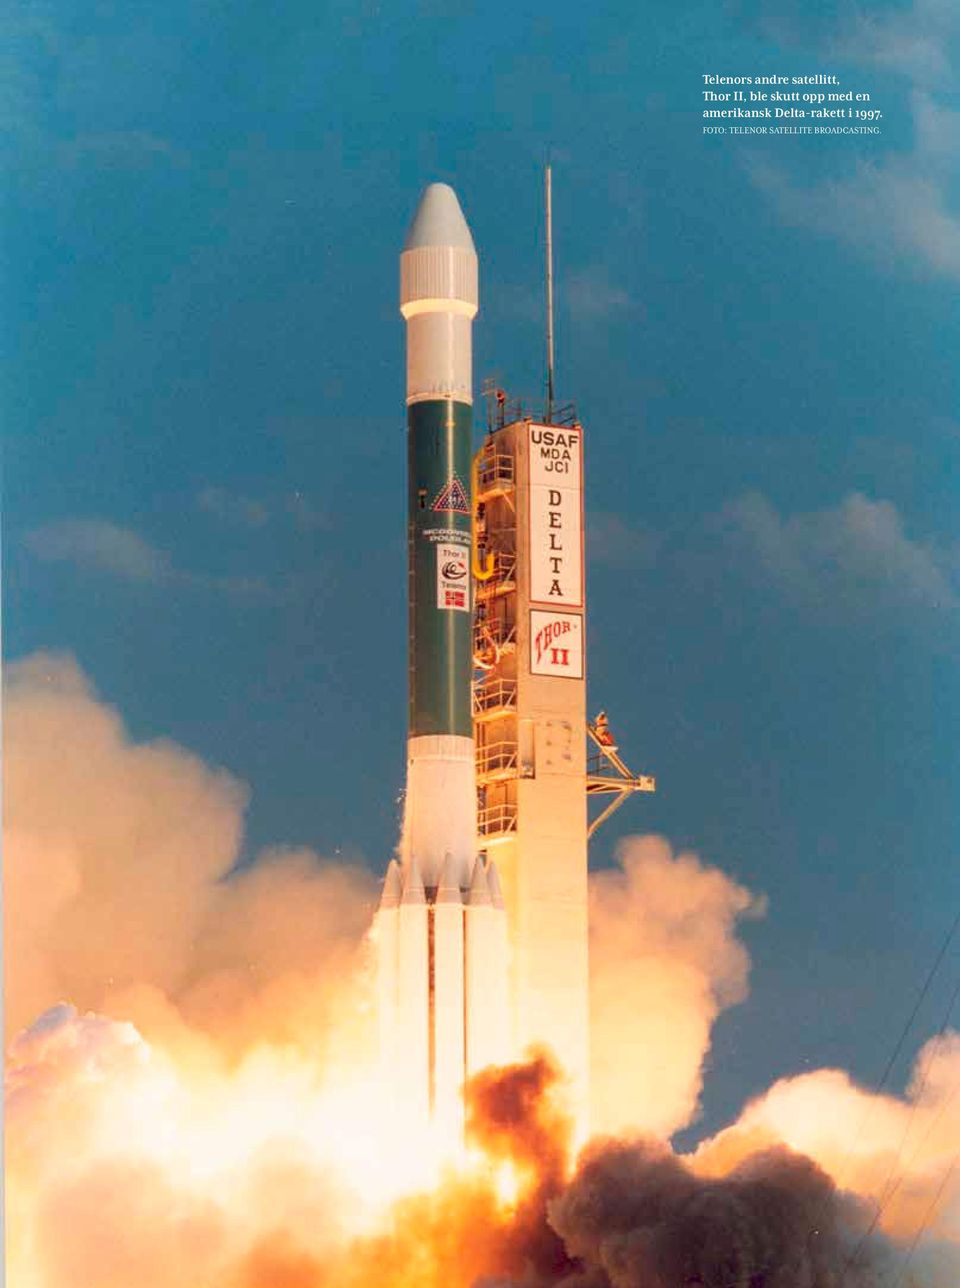 amerikansk Delta-rakett i 1997.